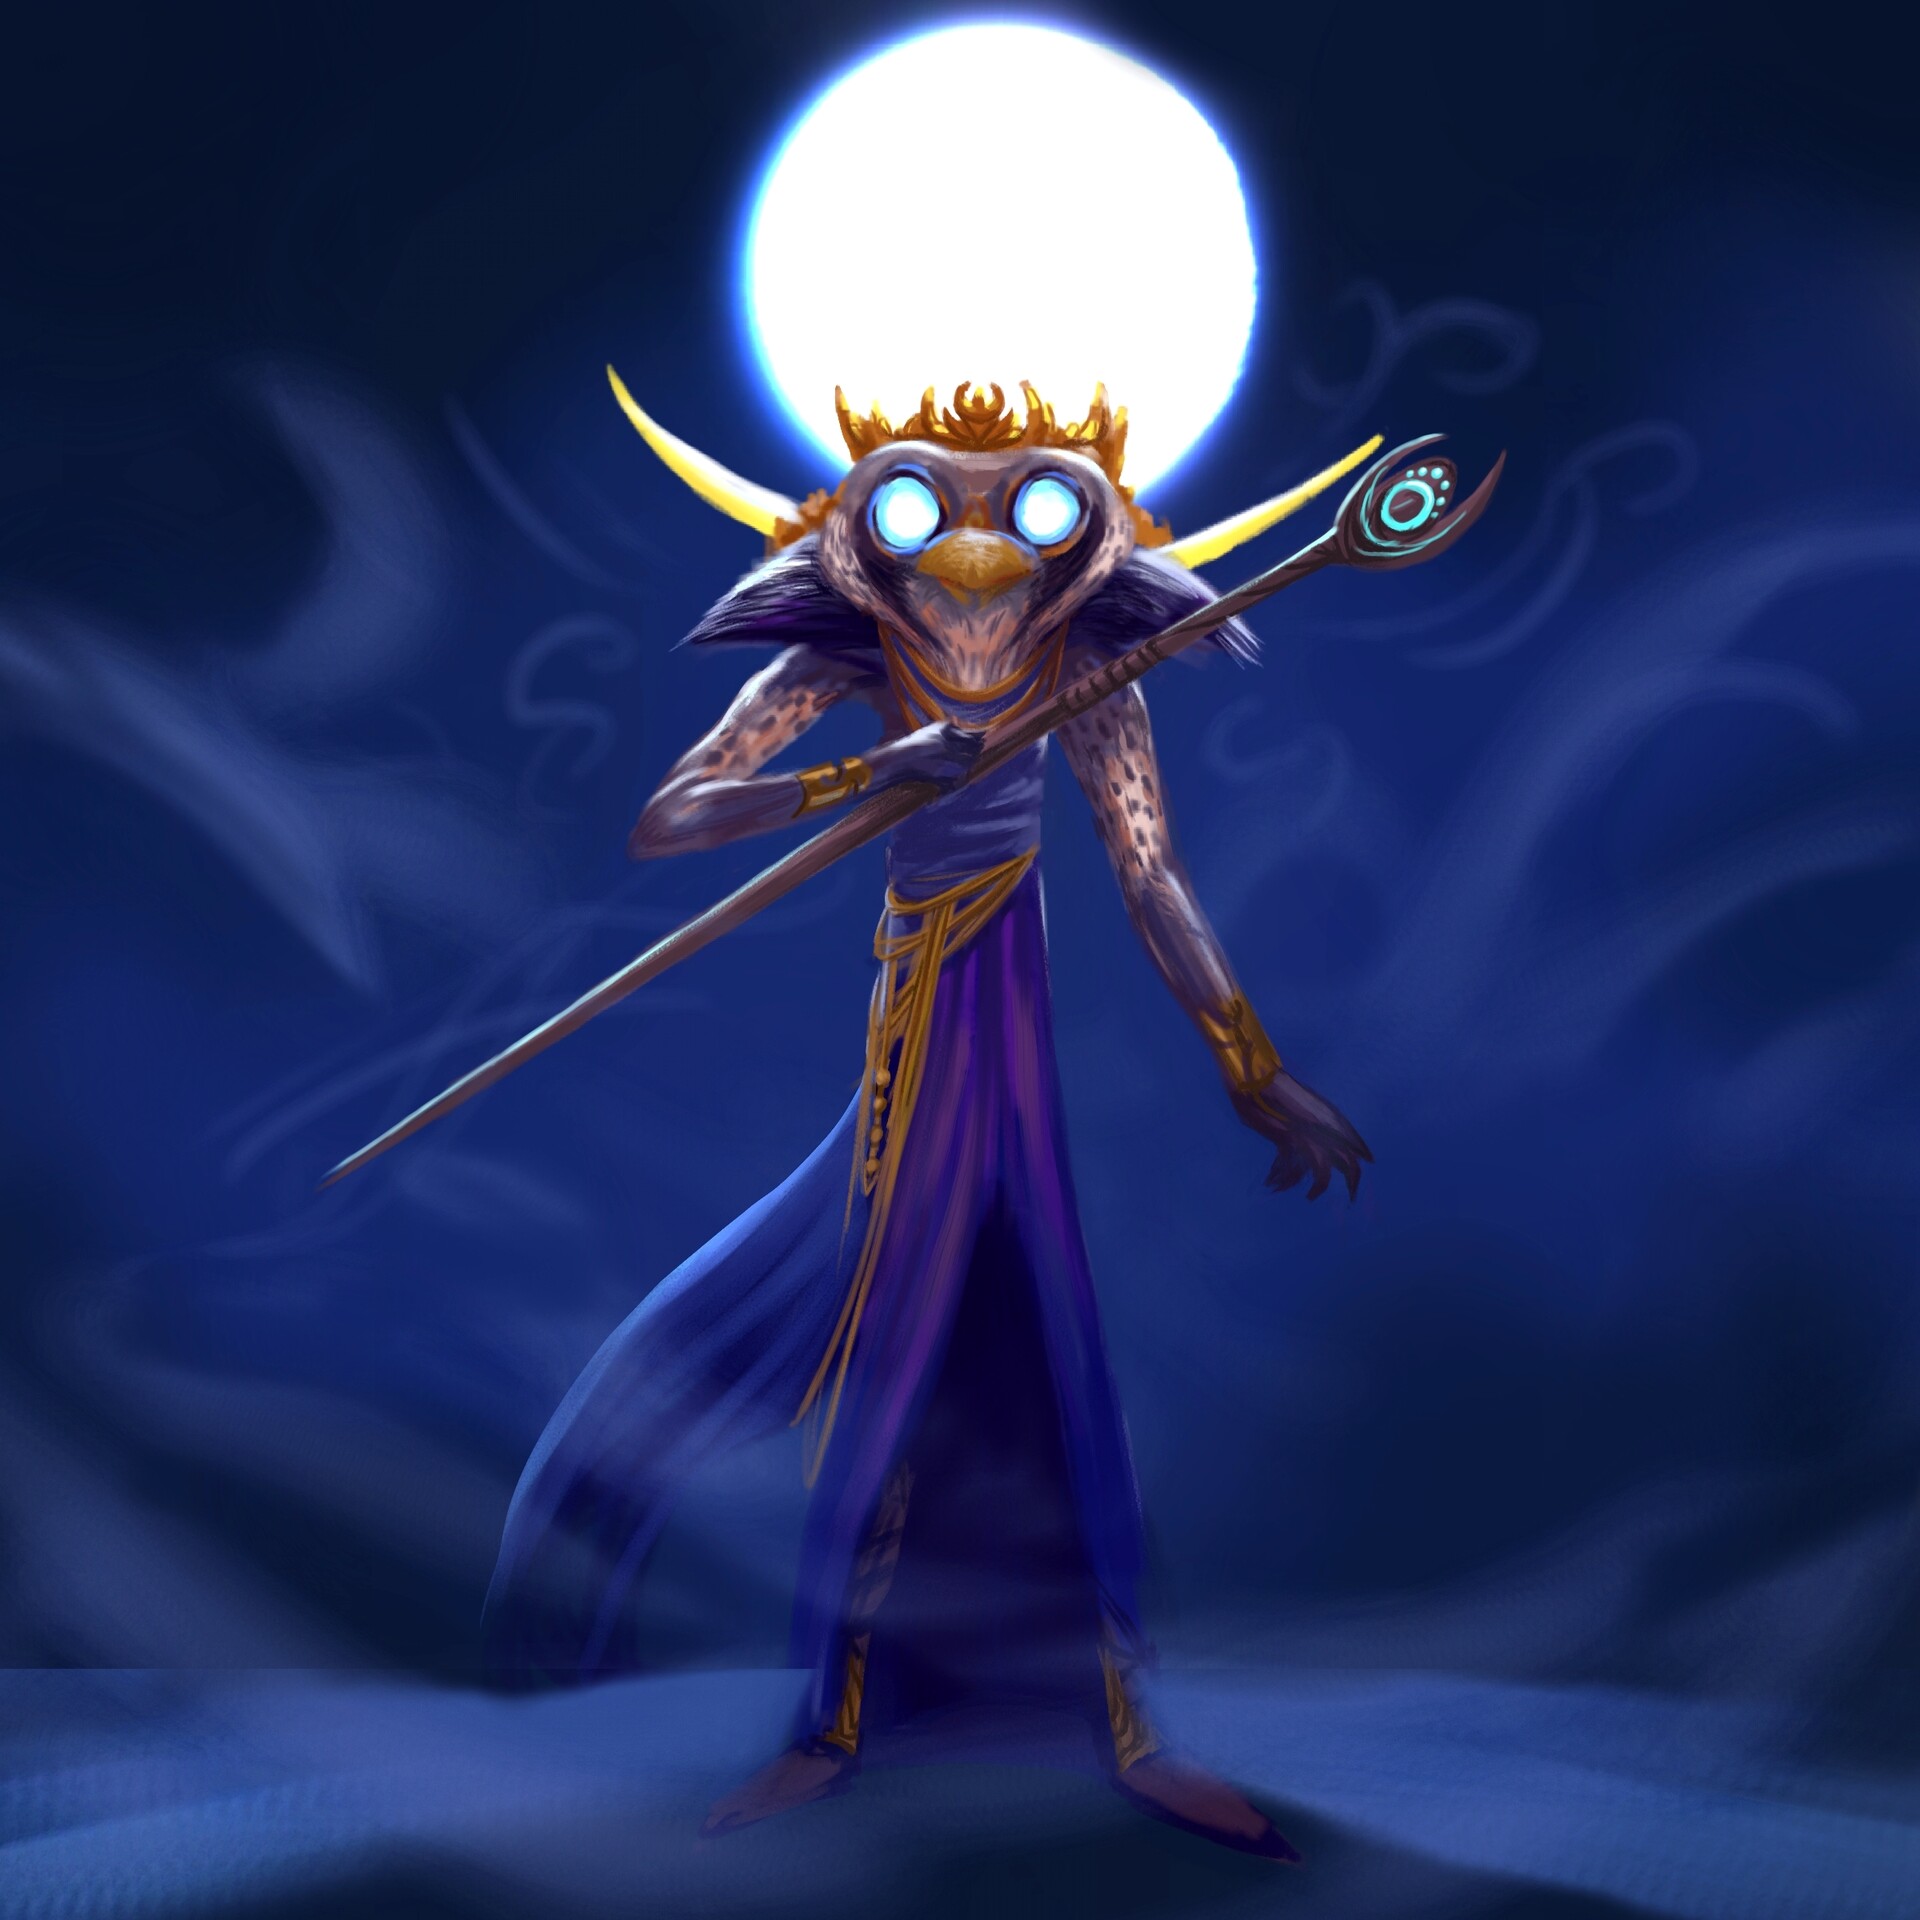 the moon god khonsu